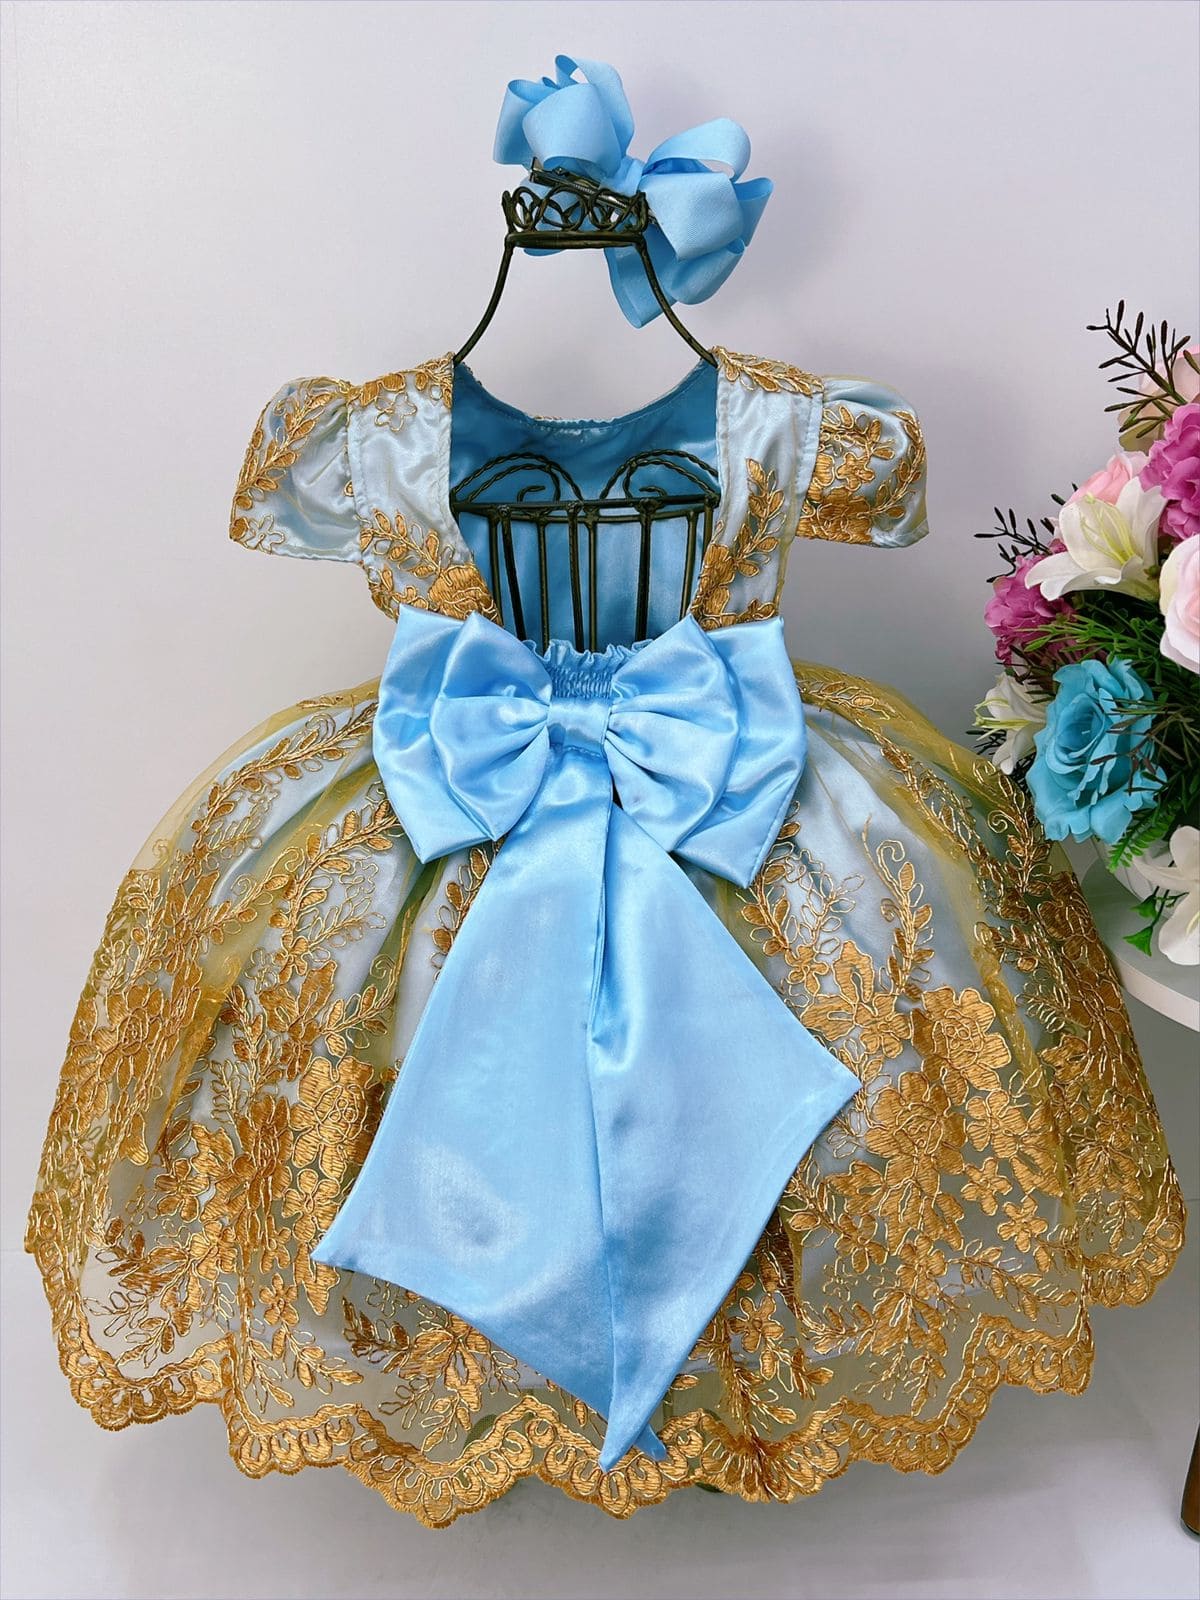 Vestido Infantil Princesa Sofia Lilás C/ Cinto De Pérolas